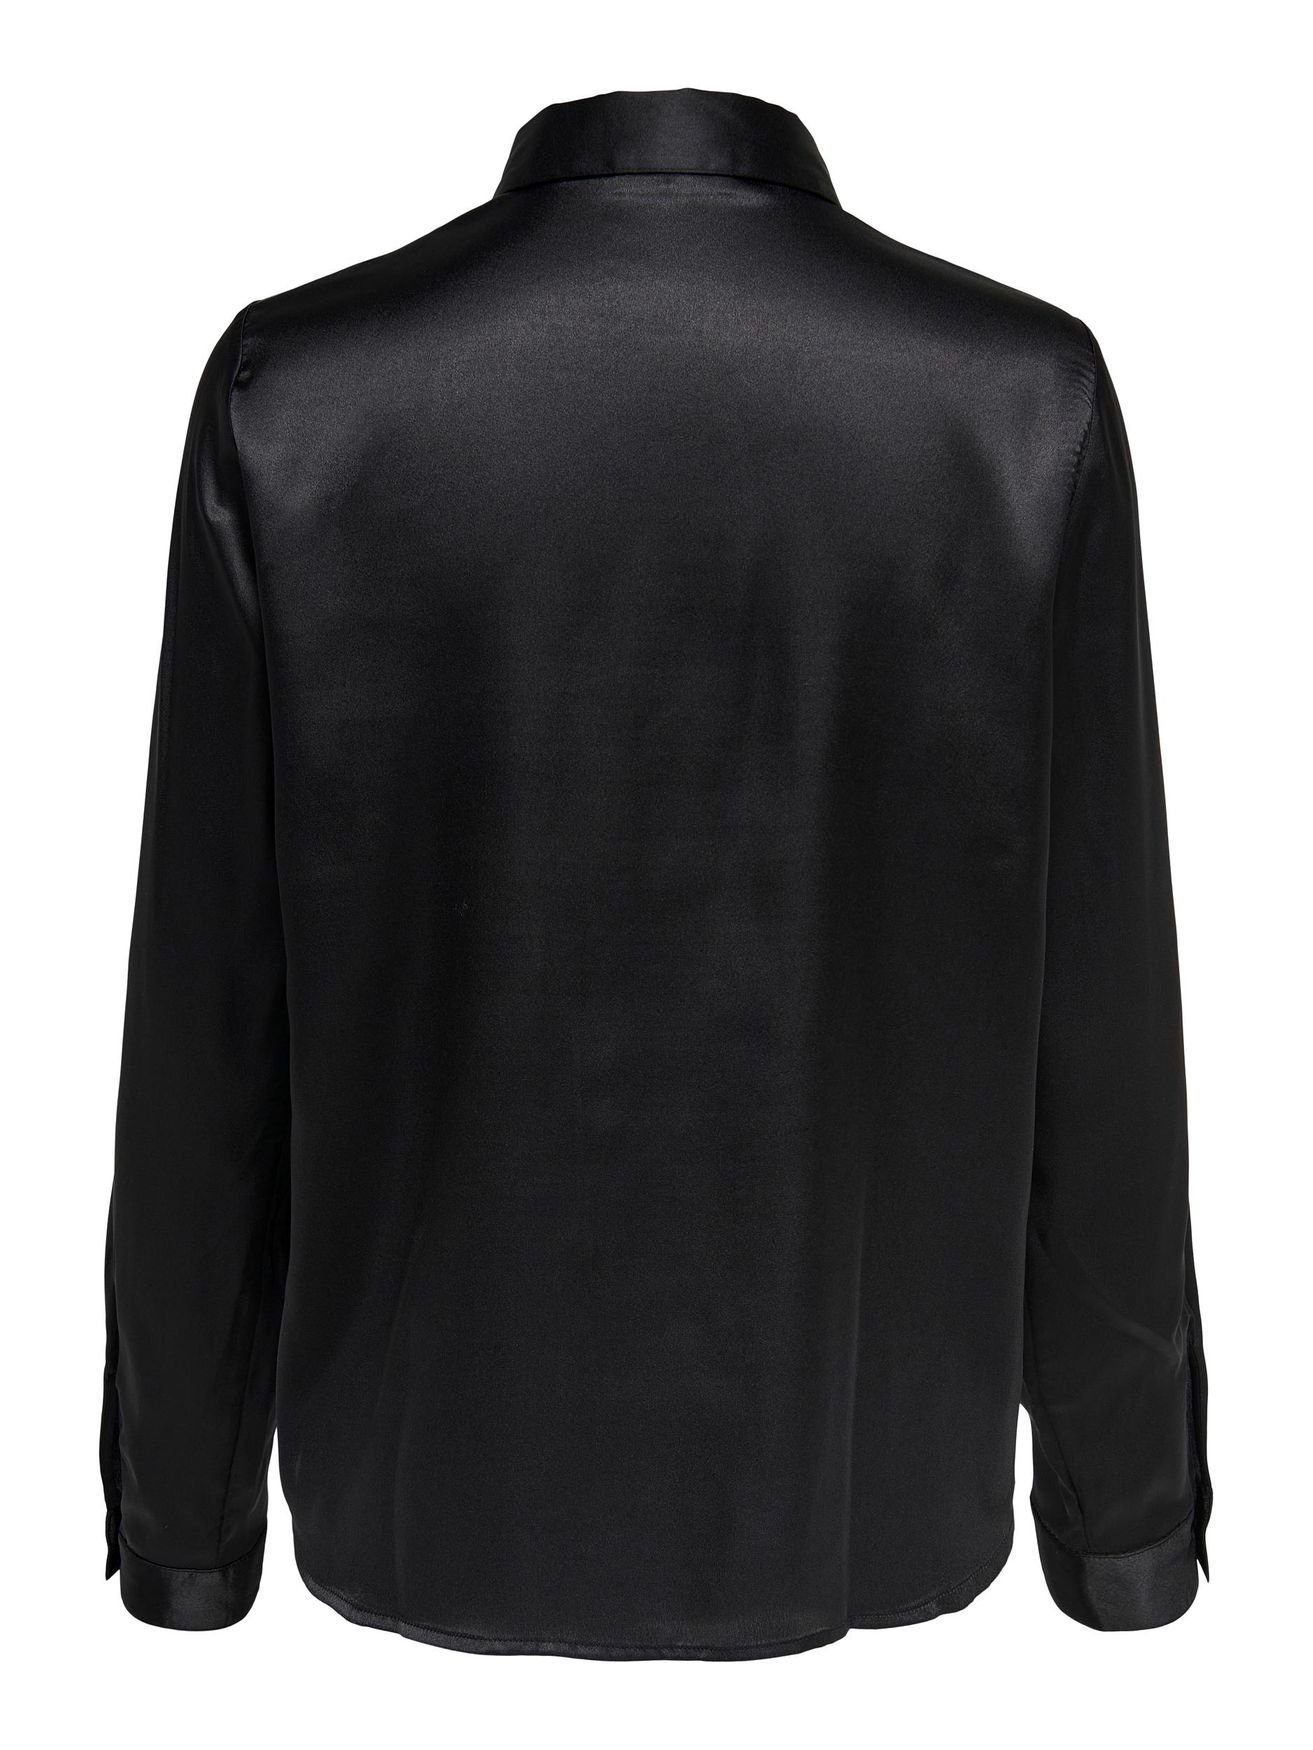 JACQUELINE de YONG Blusenshirt in JDYFIFI Business Satin Tunika Elegante 4470 Schwarz Langarm Hemd Bluse